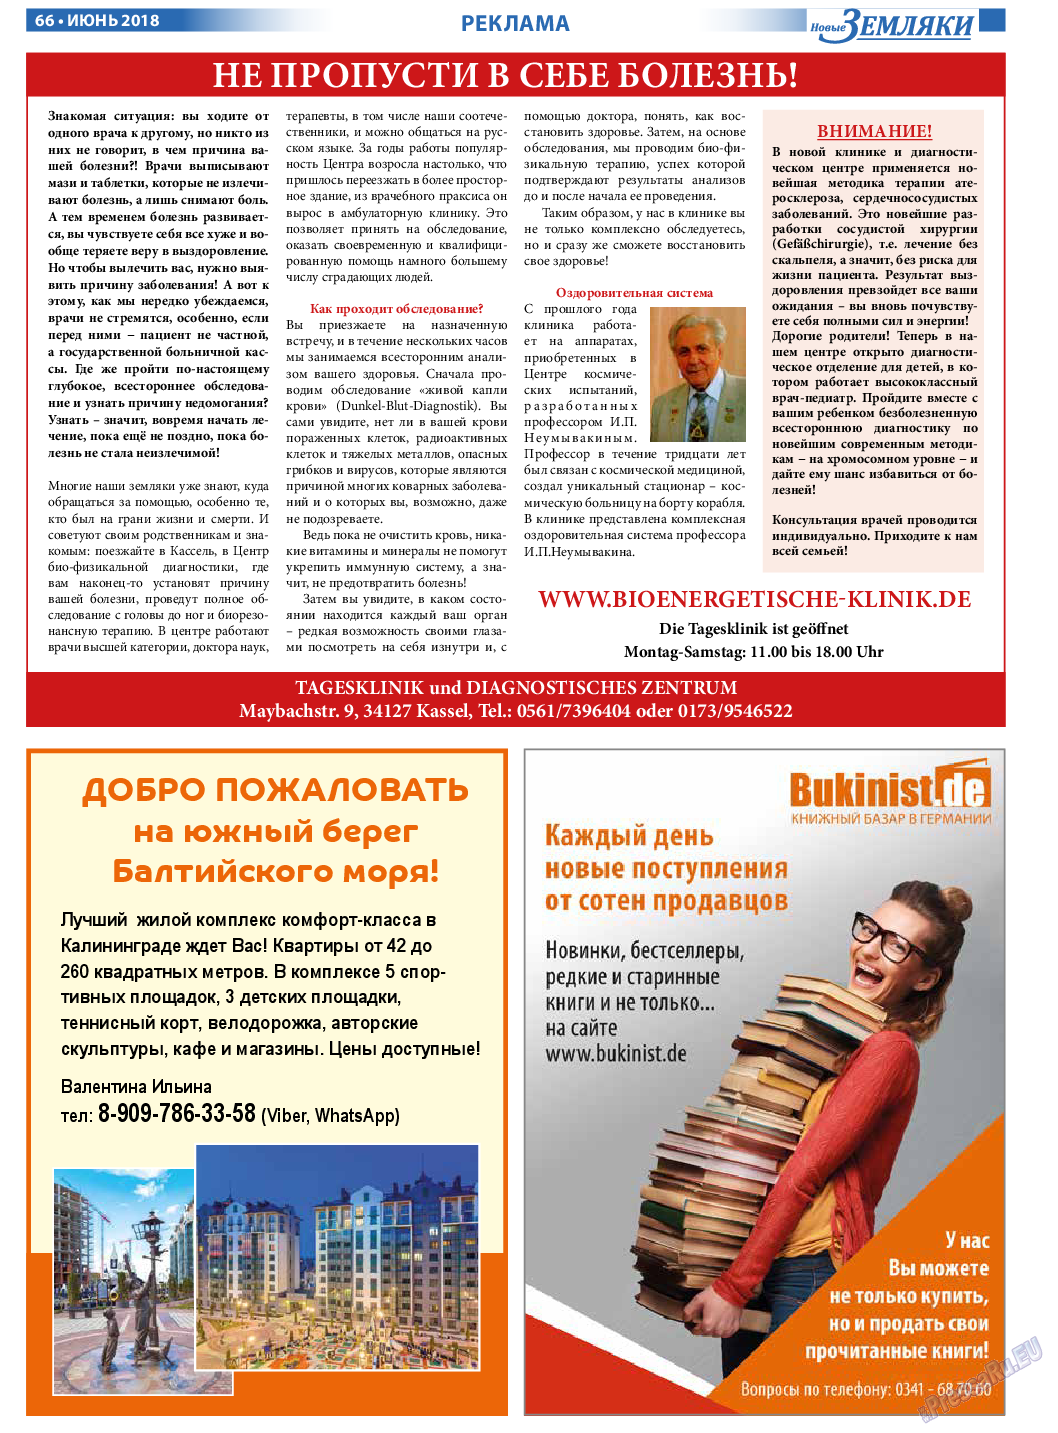 Новые Земляки, газета. 2018 №6 стр.66